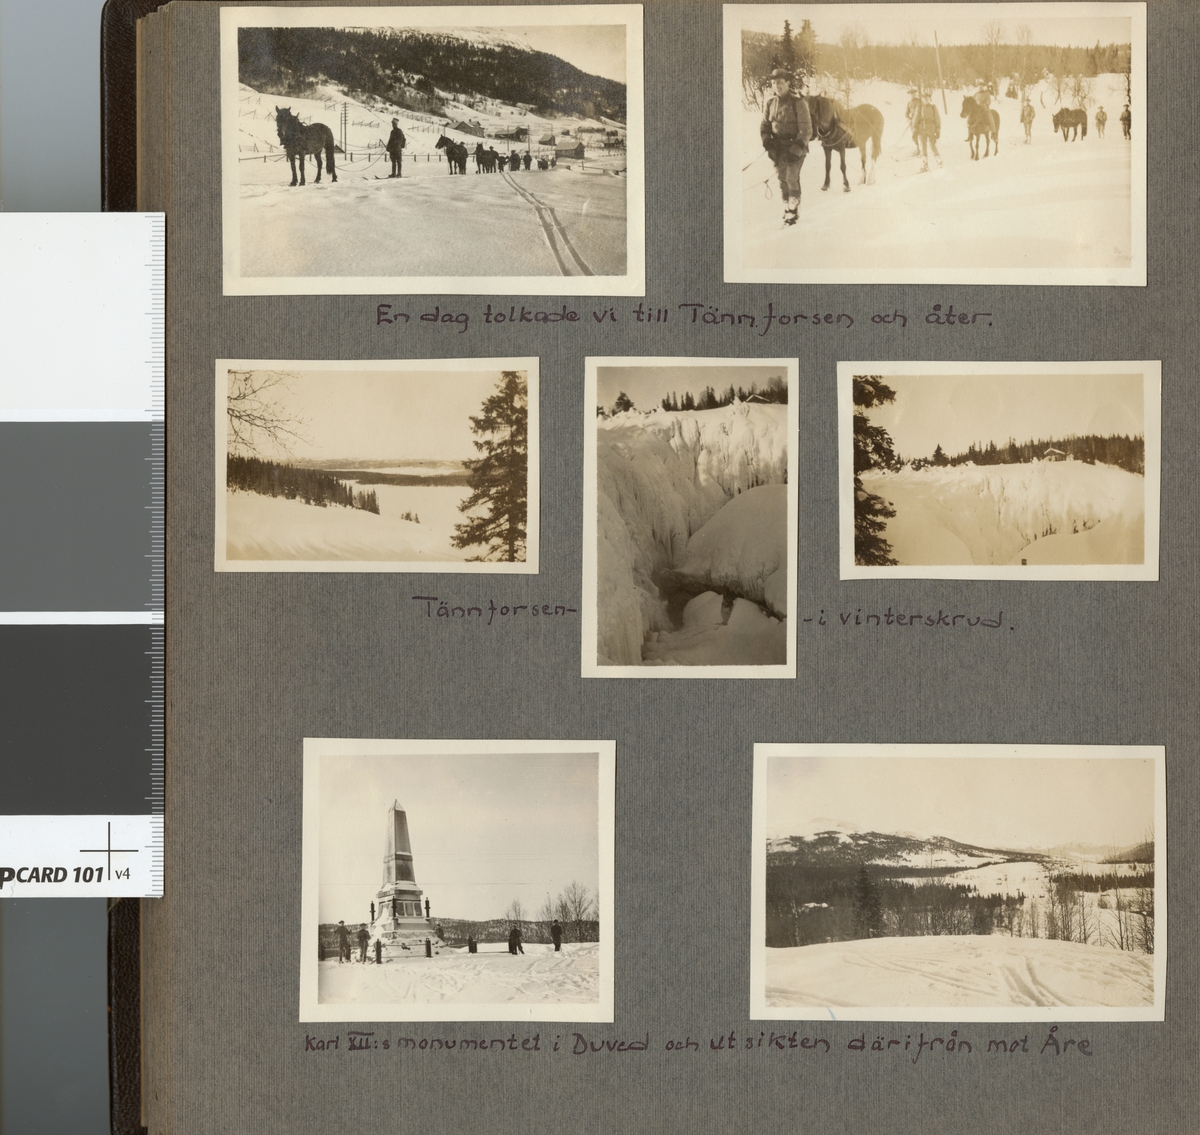 Text i fotoalbum: "Aspirantskolans vinterövningar i Björnänge febr.-mars 1926. En dag tolkade vi till Tännforsen och tillbaka".